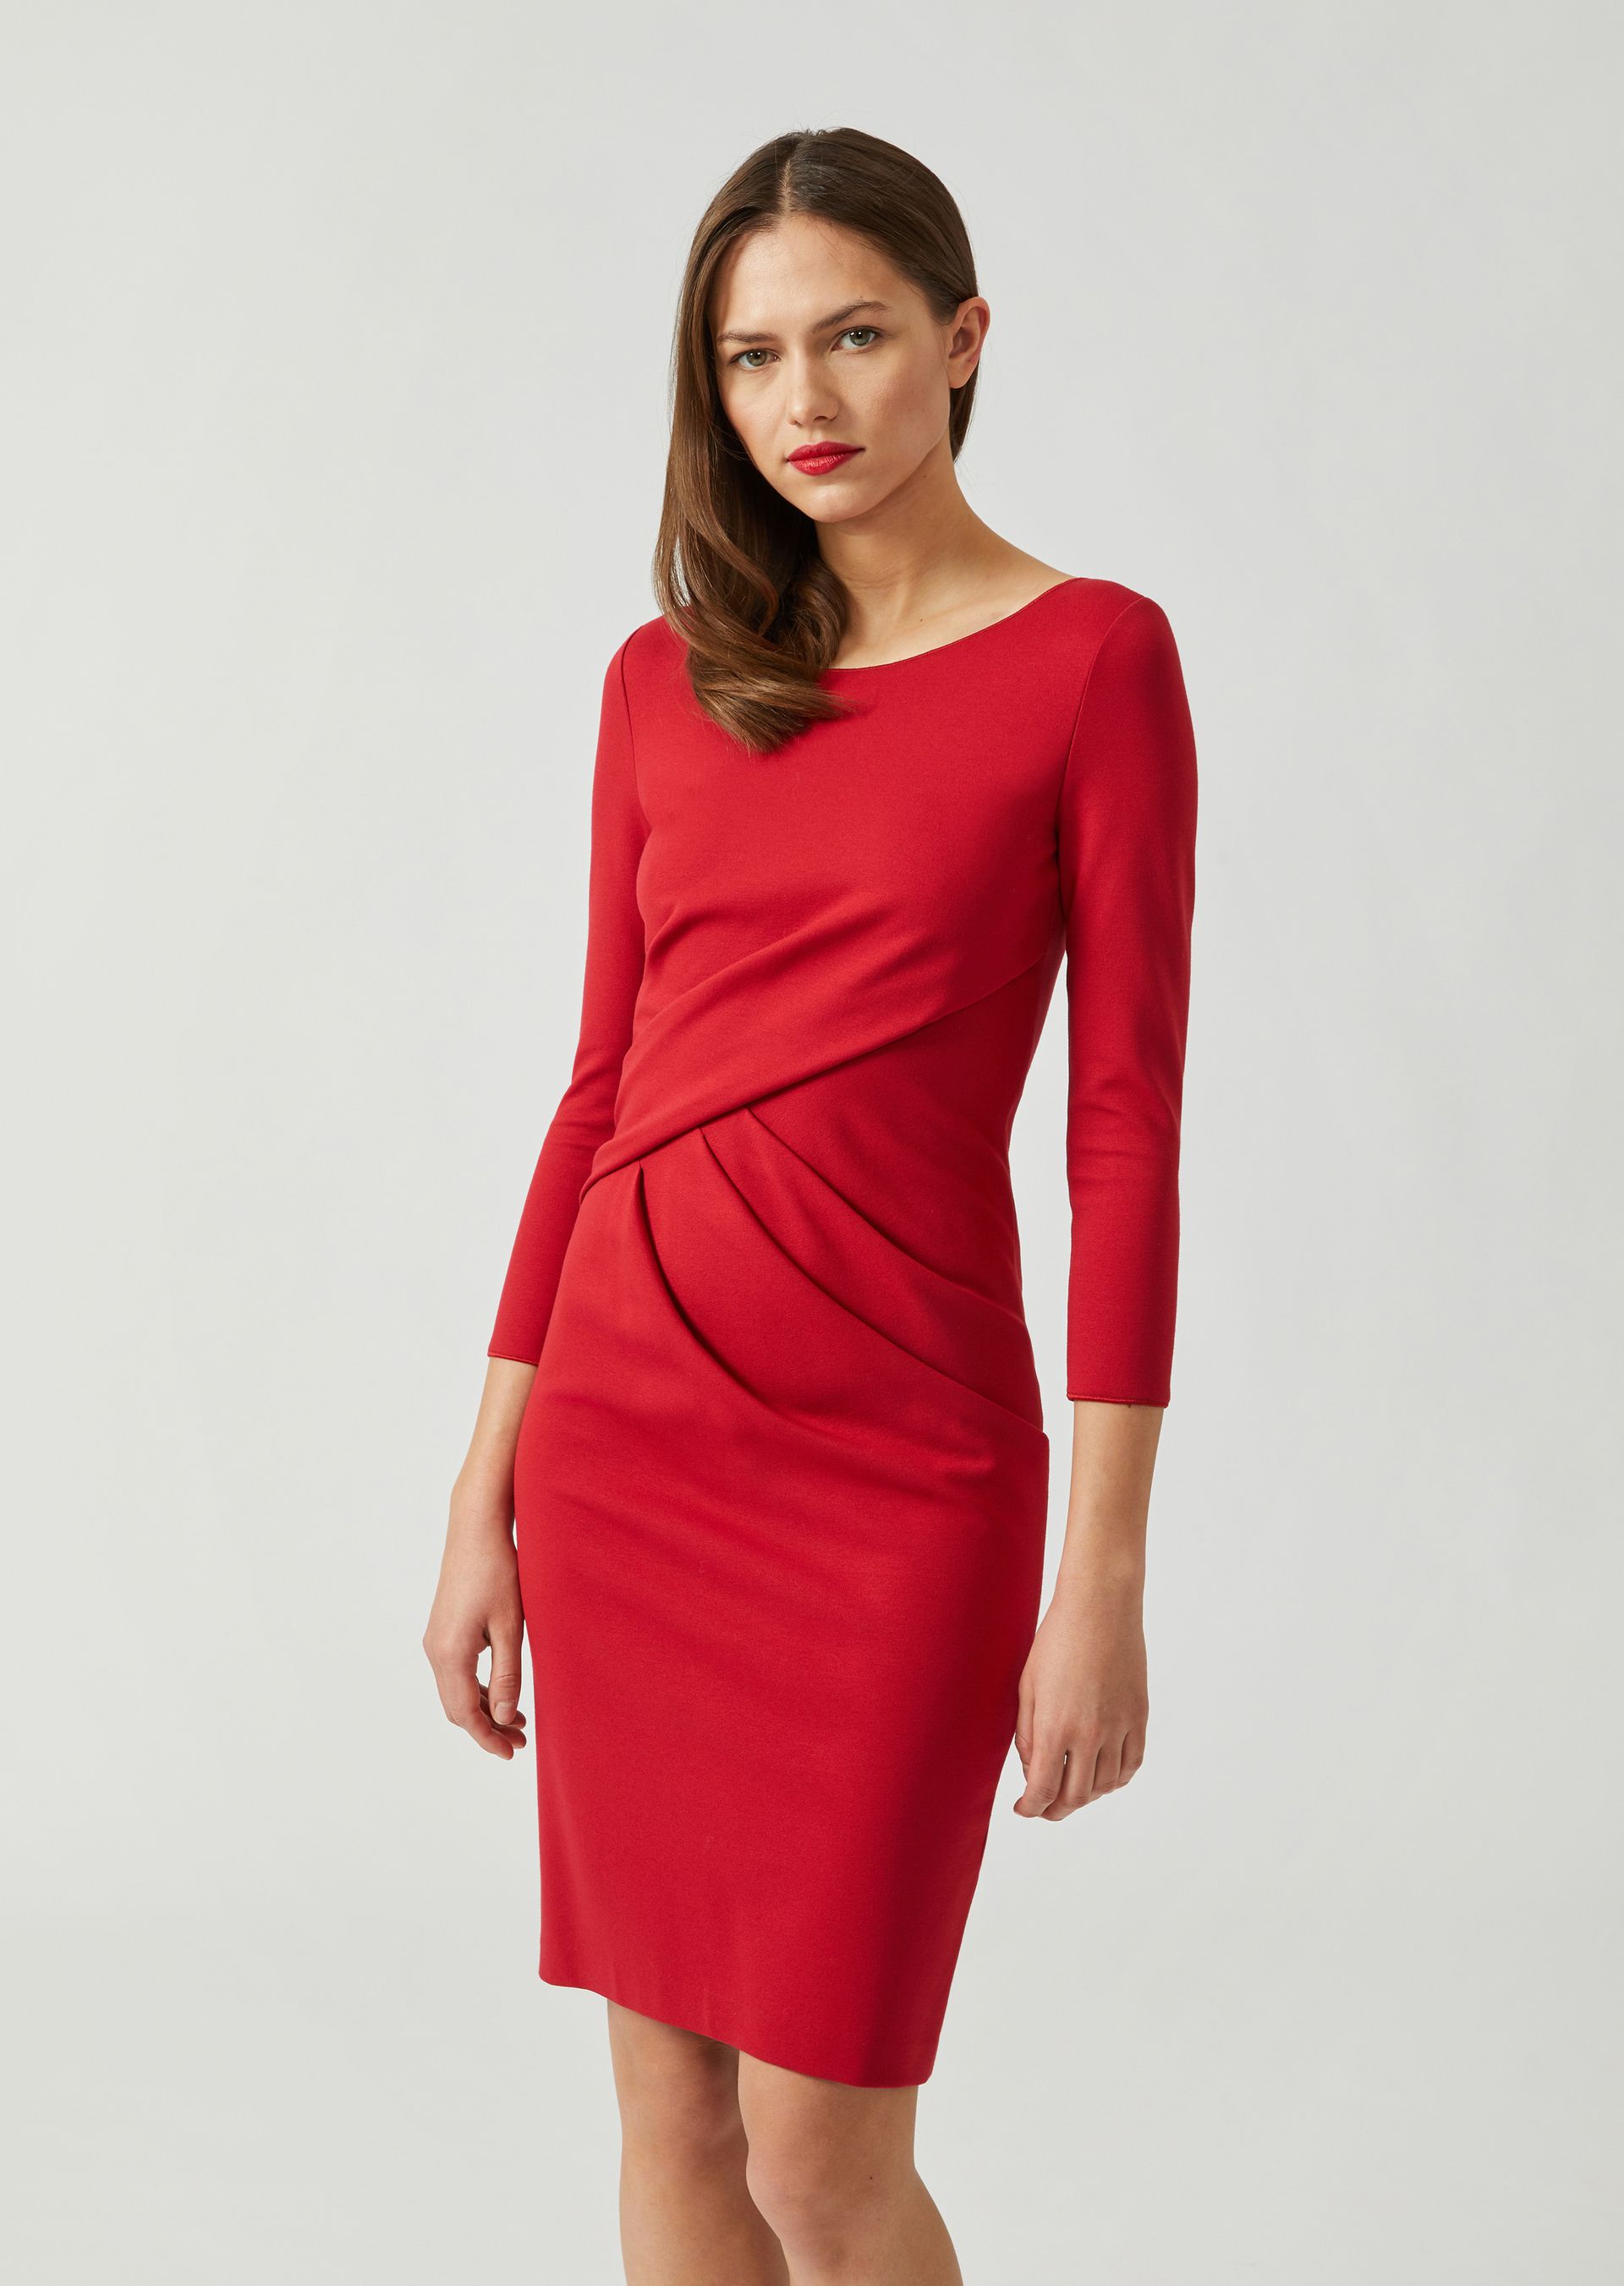 emporio armani red dress